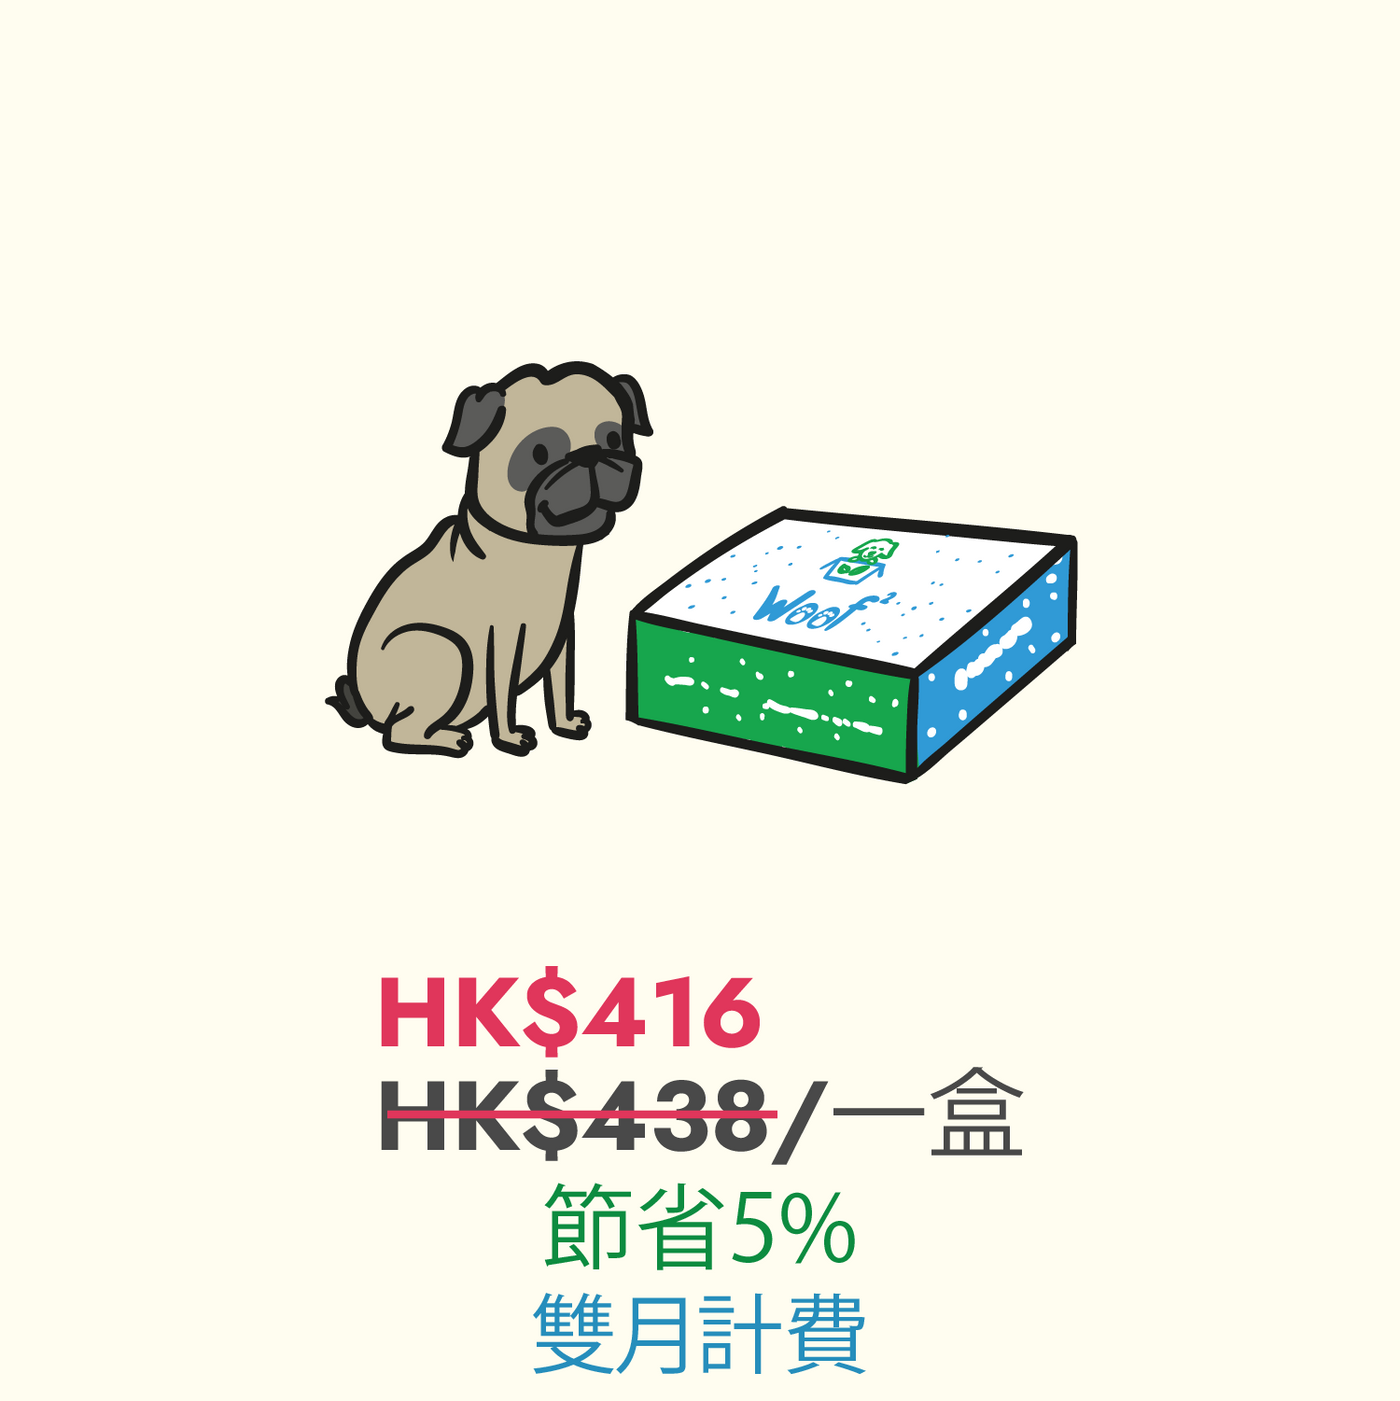 [中文版] Woof² 訂閱四個月狗狗禮物盒（每兩個月寄出一盒) - Woof² HK